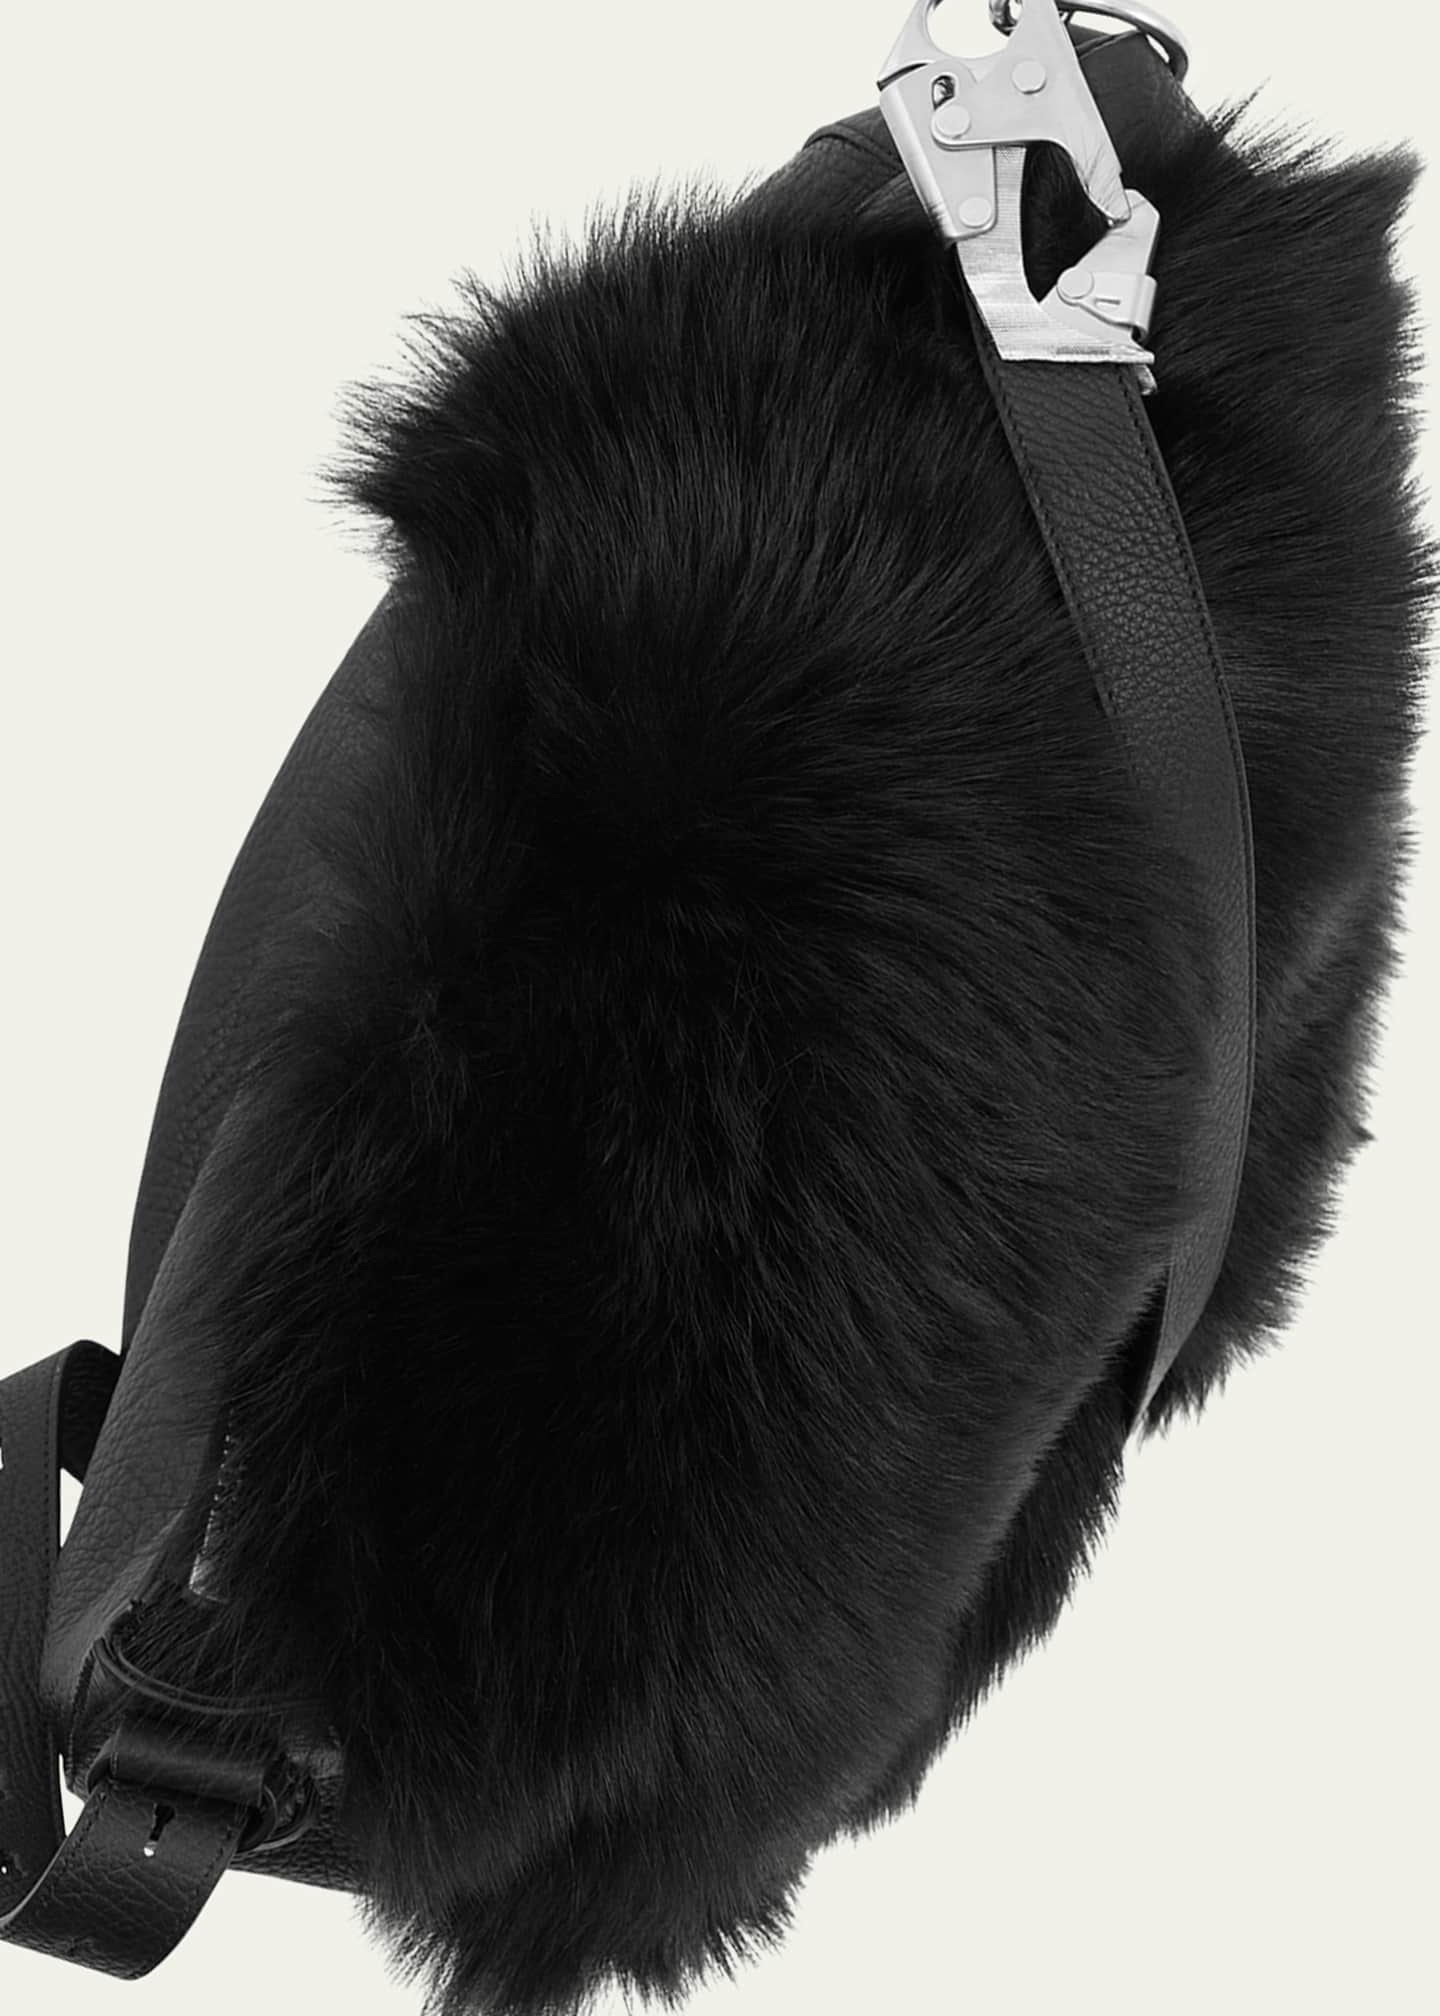 Burberry Medium Knight Leather Shoulder Bag - Farfetch